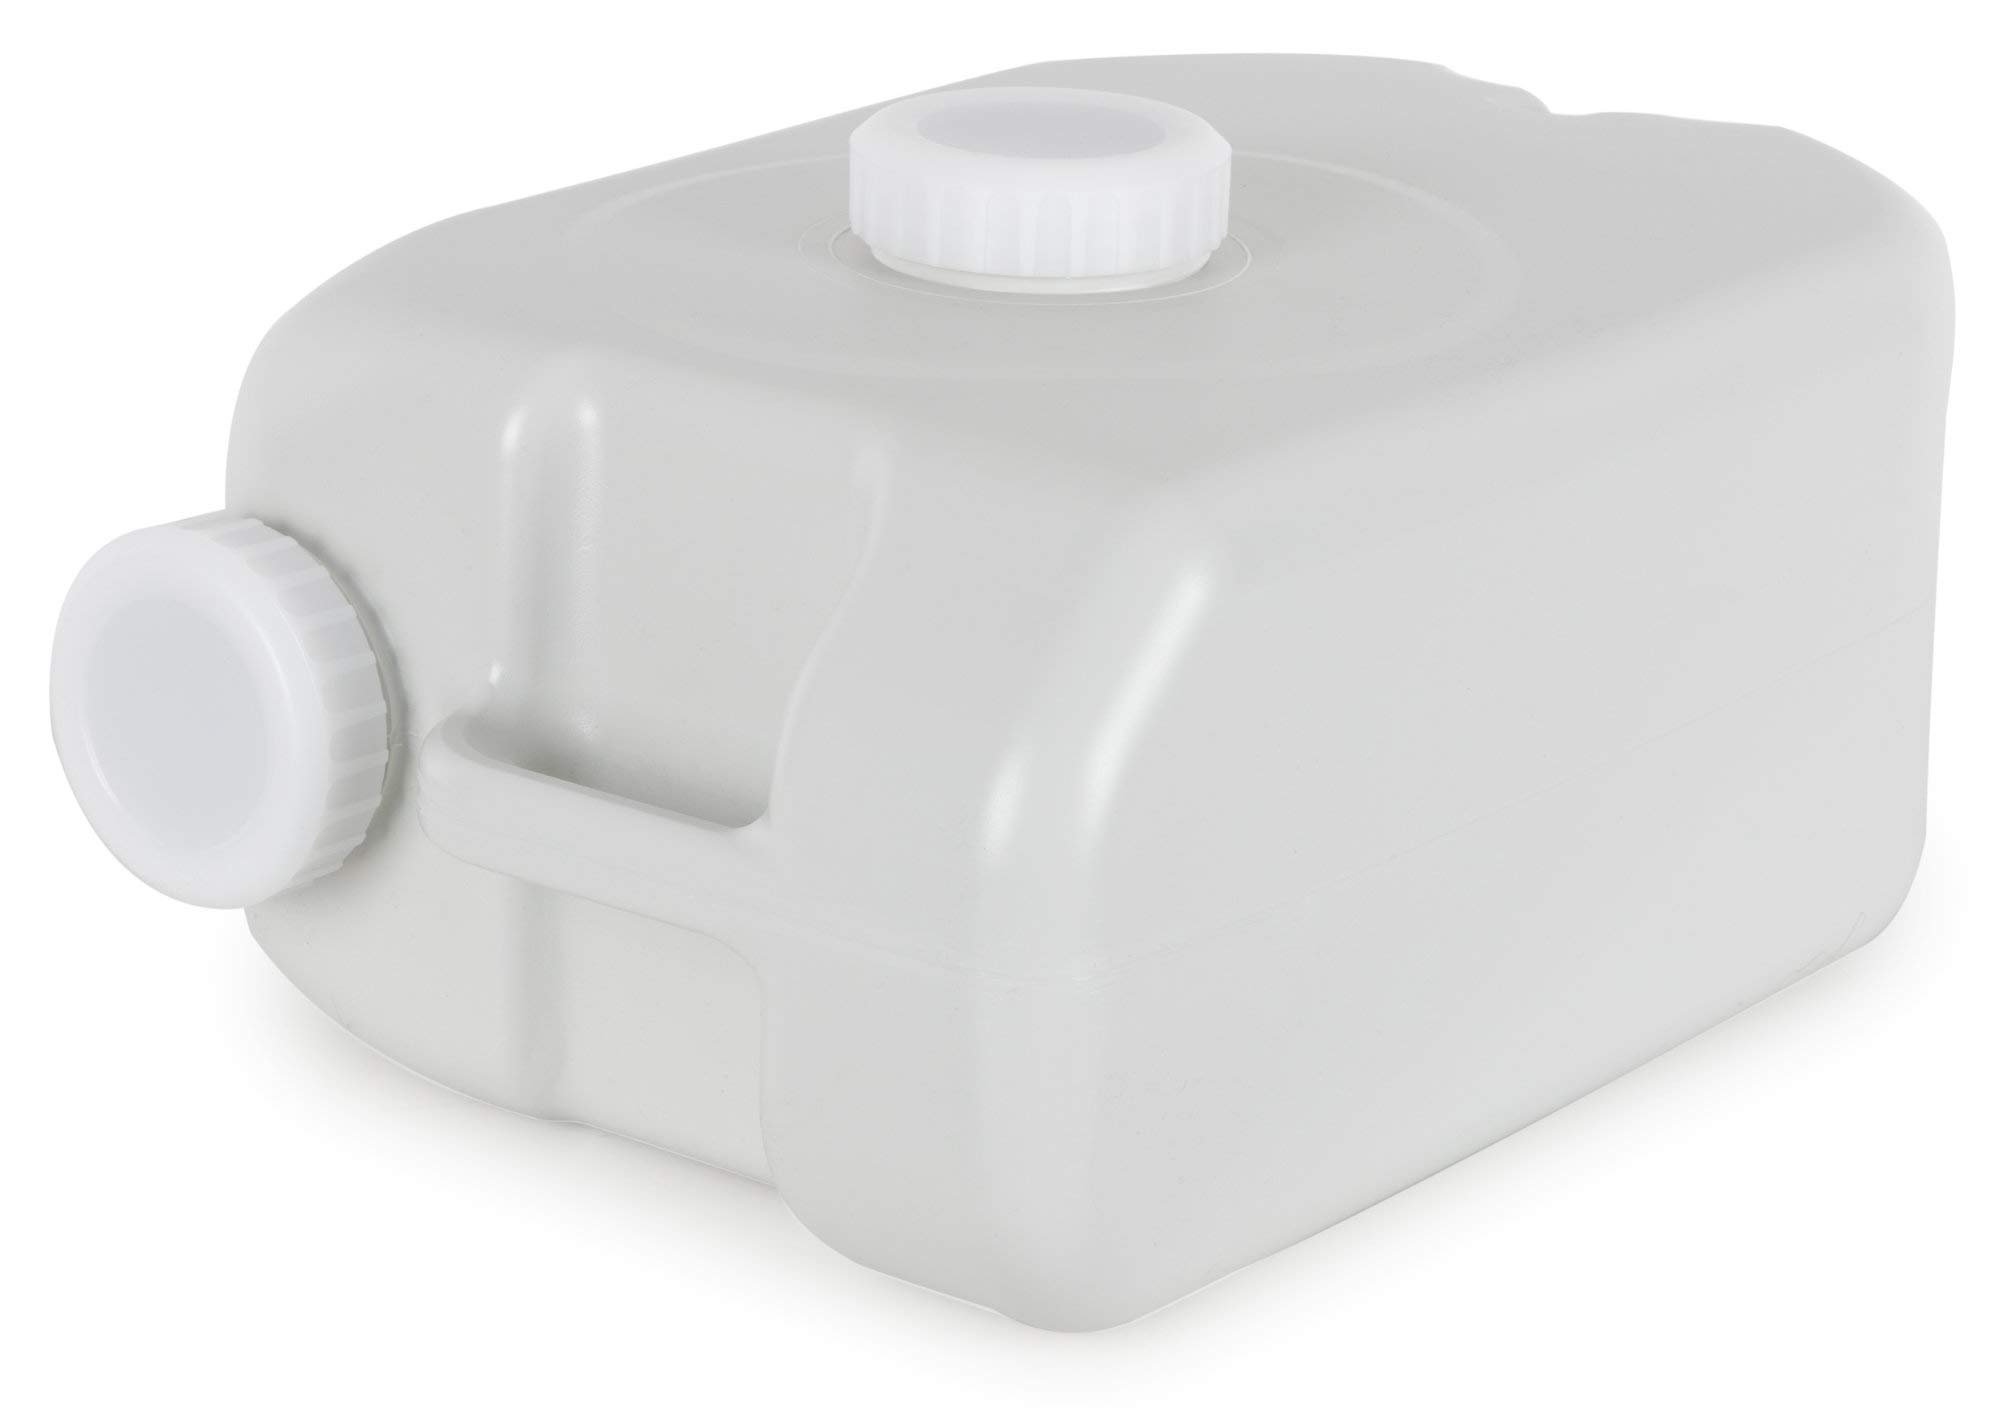 Stagecaptain AWB-24 Quixie Abwasserbehälter - Abwasser-Auffangbehälter für Quixie-Waschbecken - 24 Liter Fassungsvermögen - Aus robustem PE-Kunststoff - Leicht zu entleeren - Grau